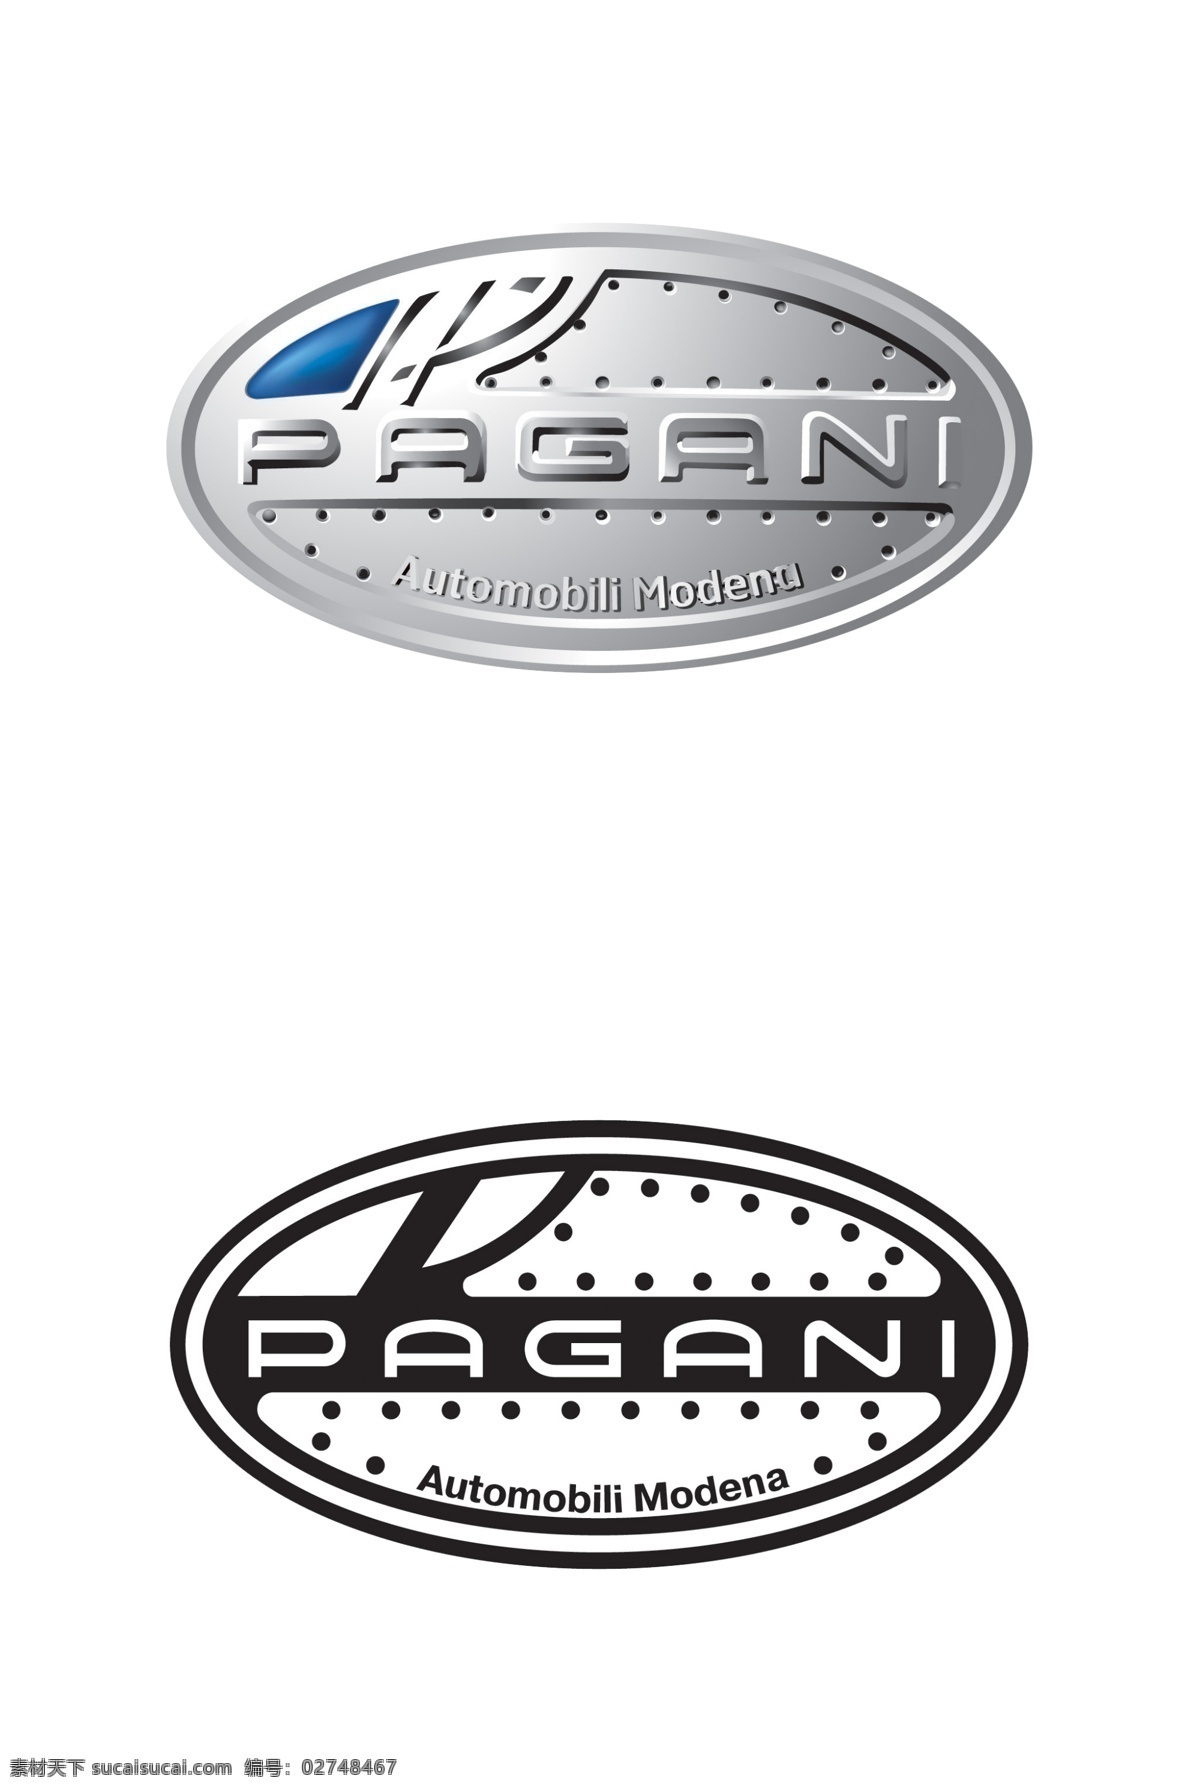 帕 加尼 高清 标志 log 帕加尼 意大利 跑车 品牌 标志设计 广告设计模板 源文件